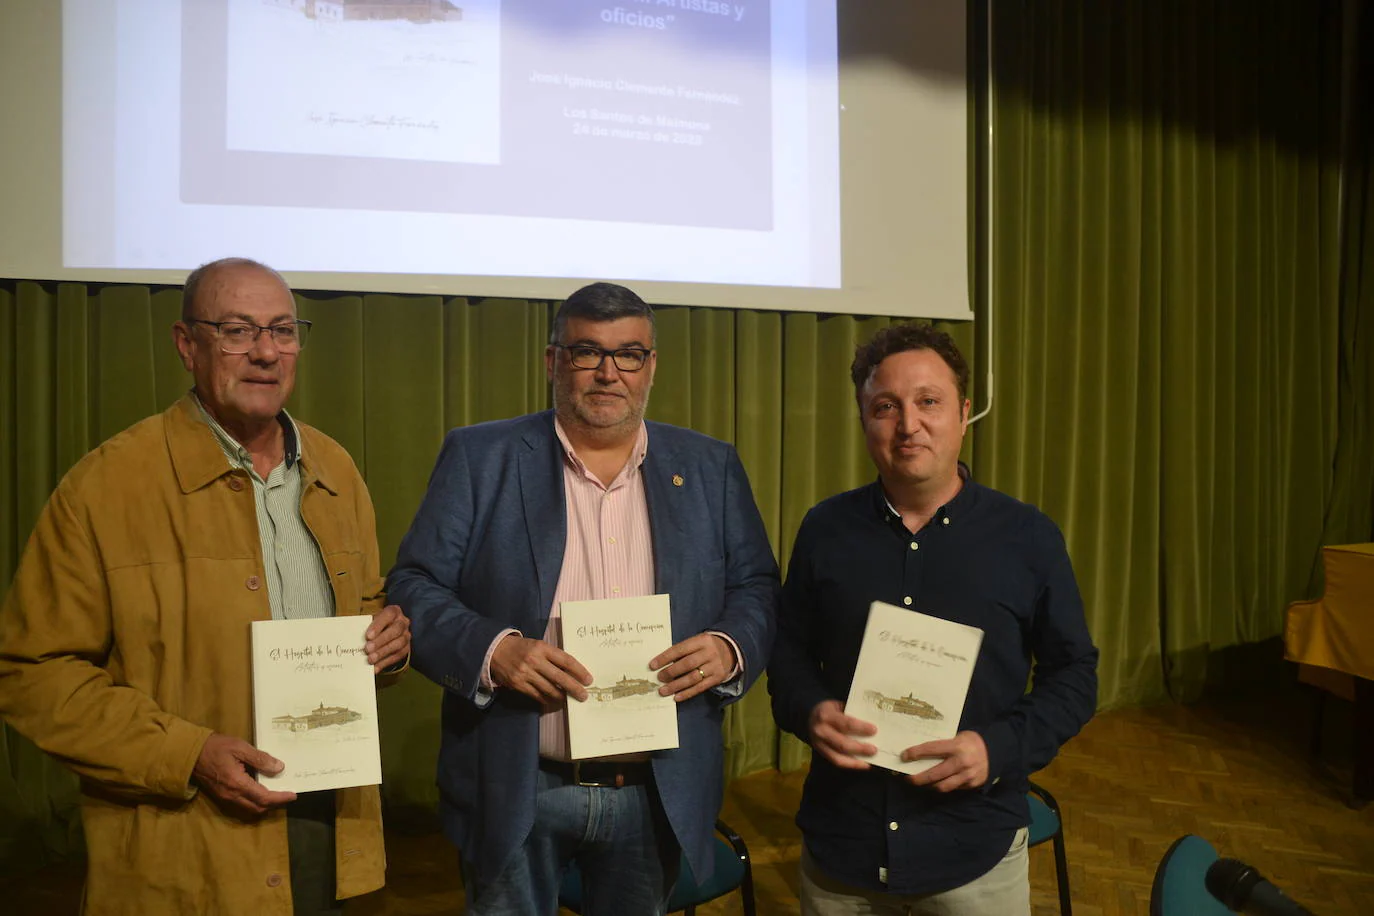 El libro ha sido editado por la Diputación de Badajoz